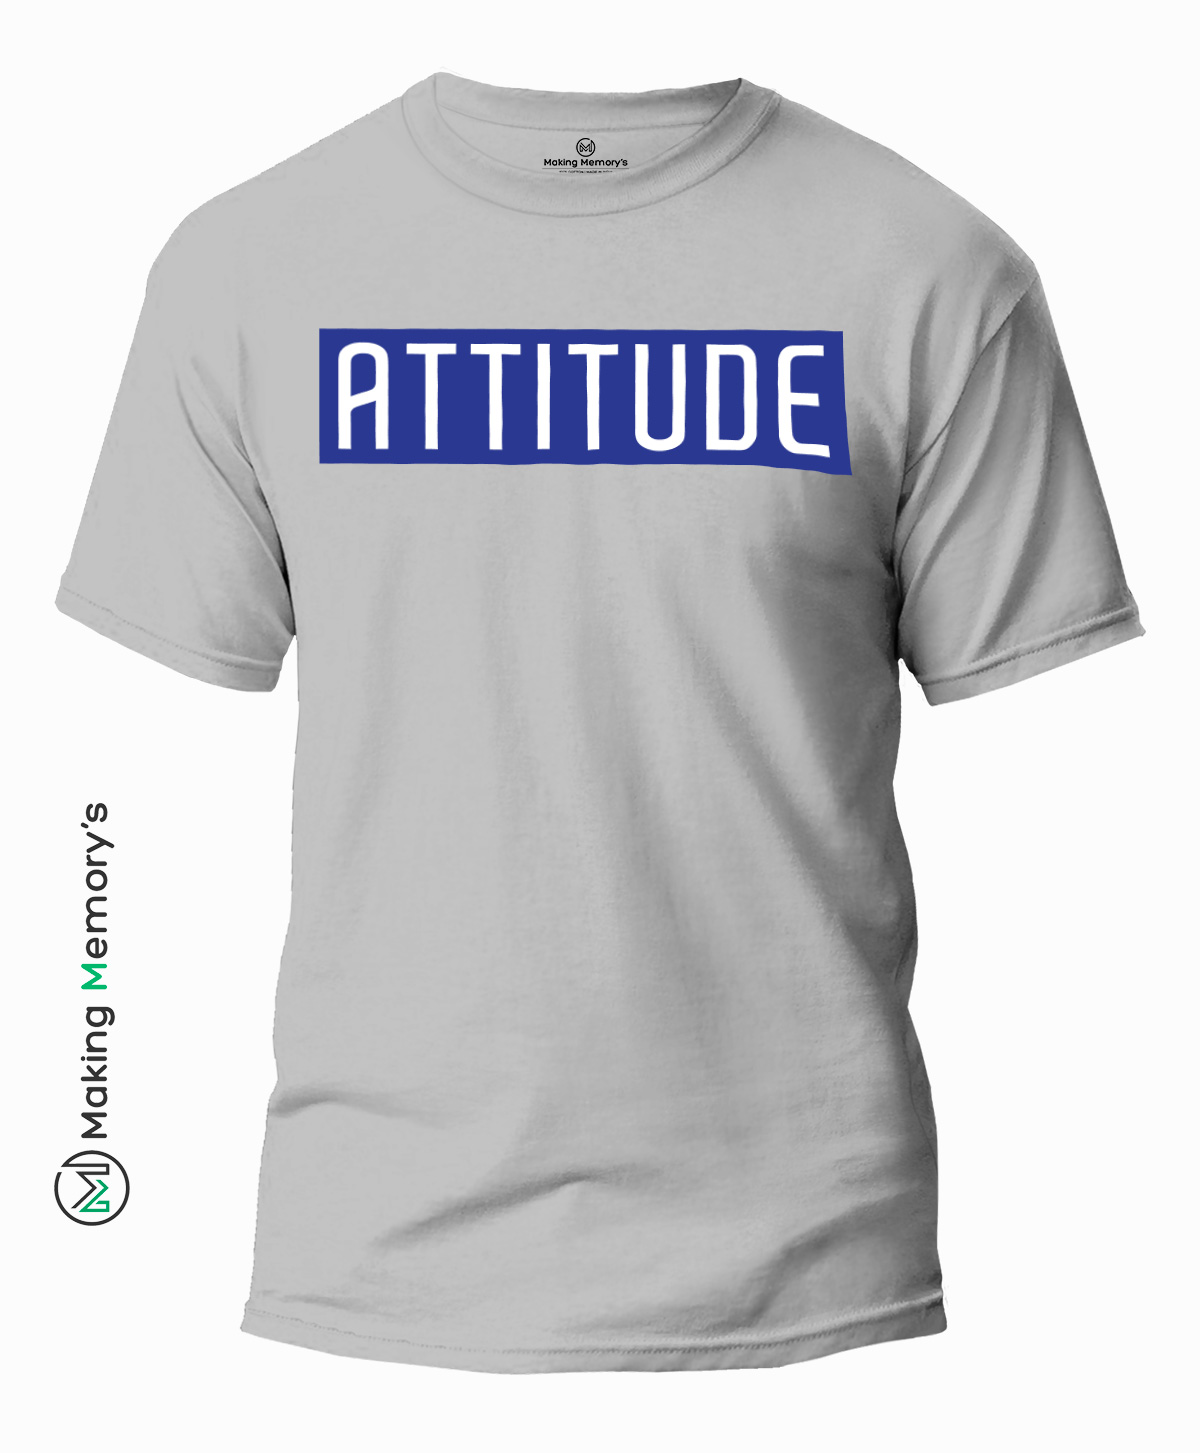 The-Attitude-Gray-T-Shirt